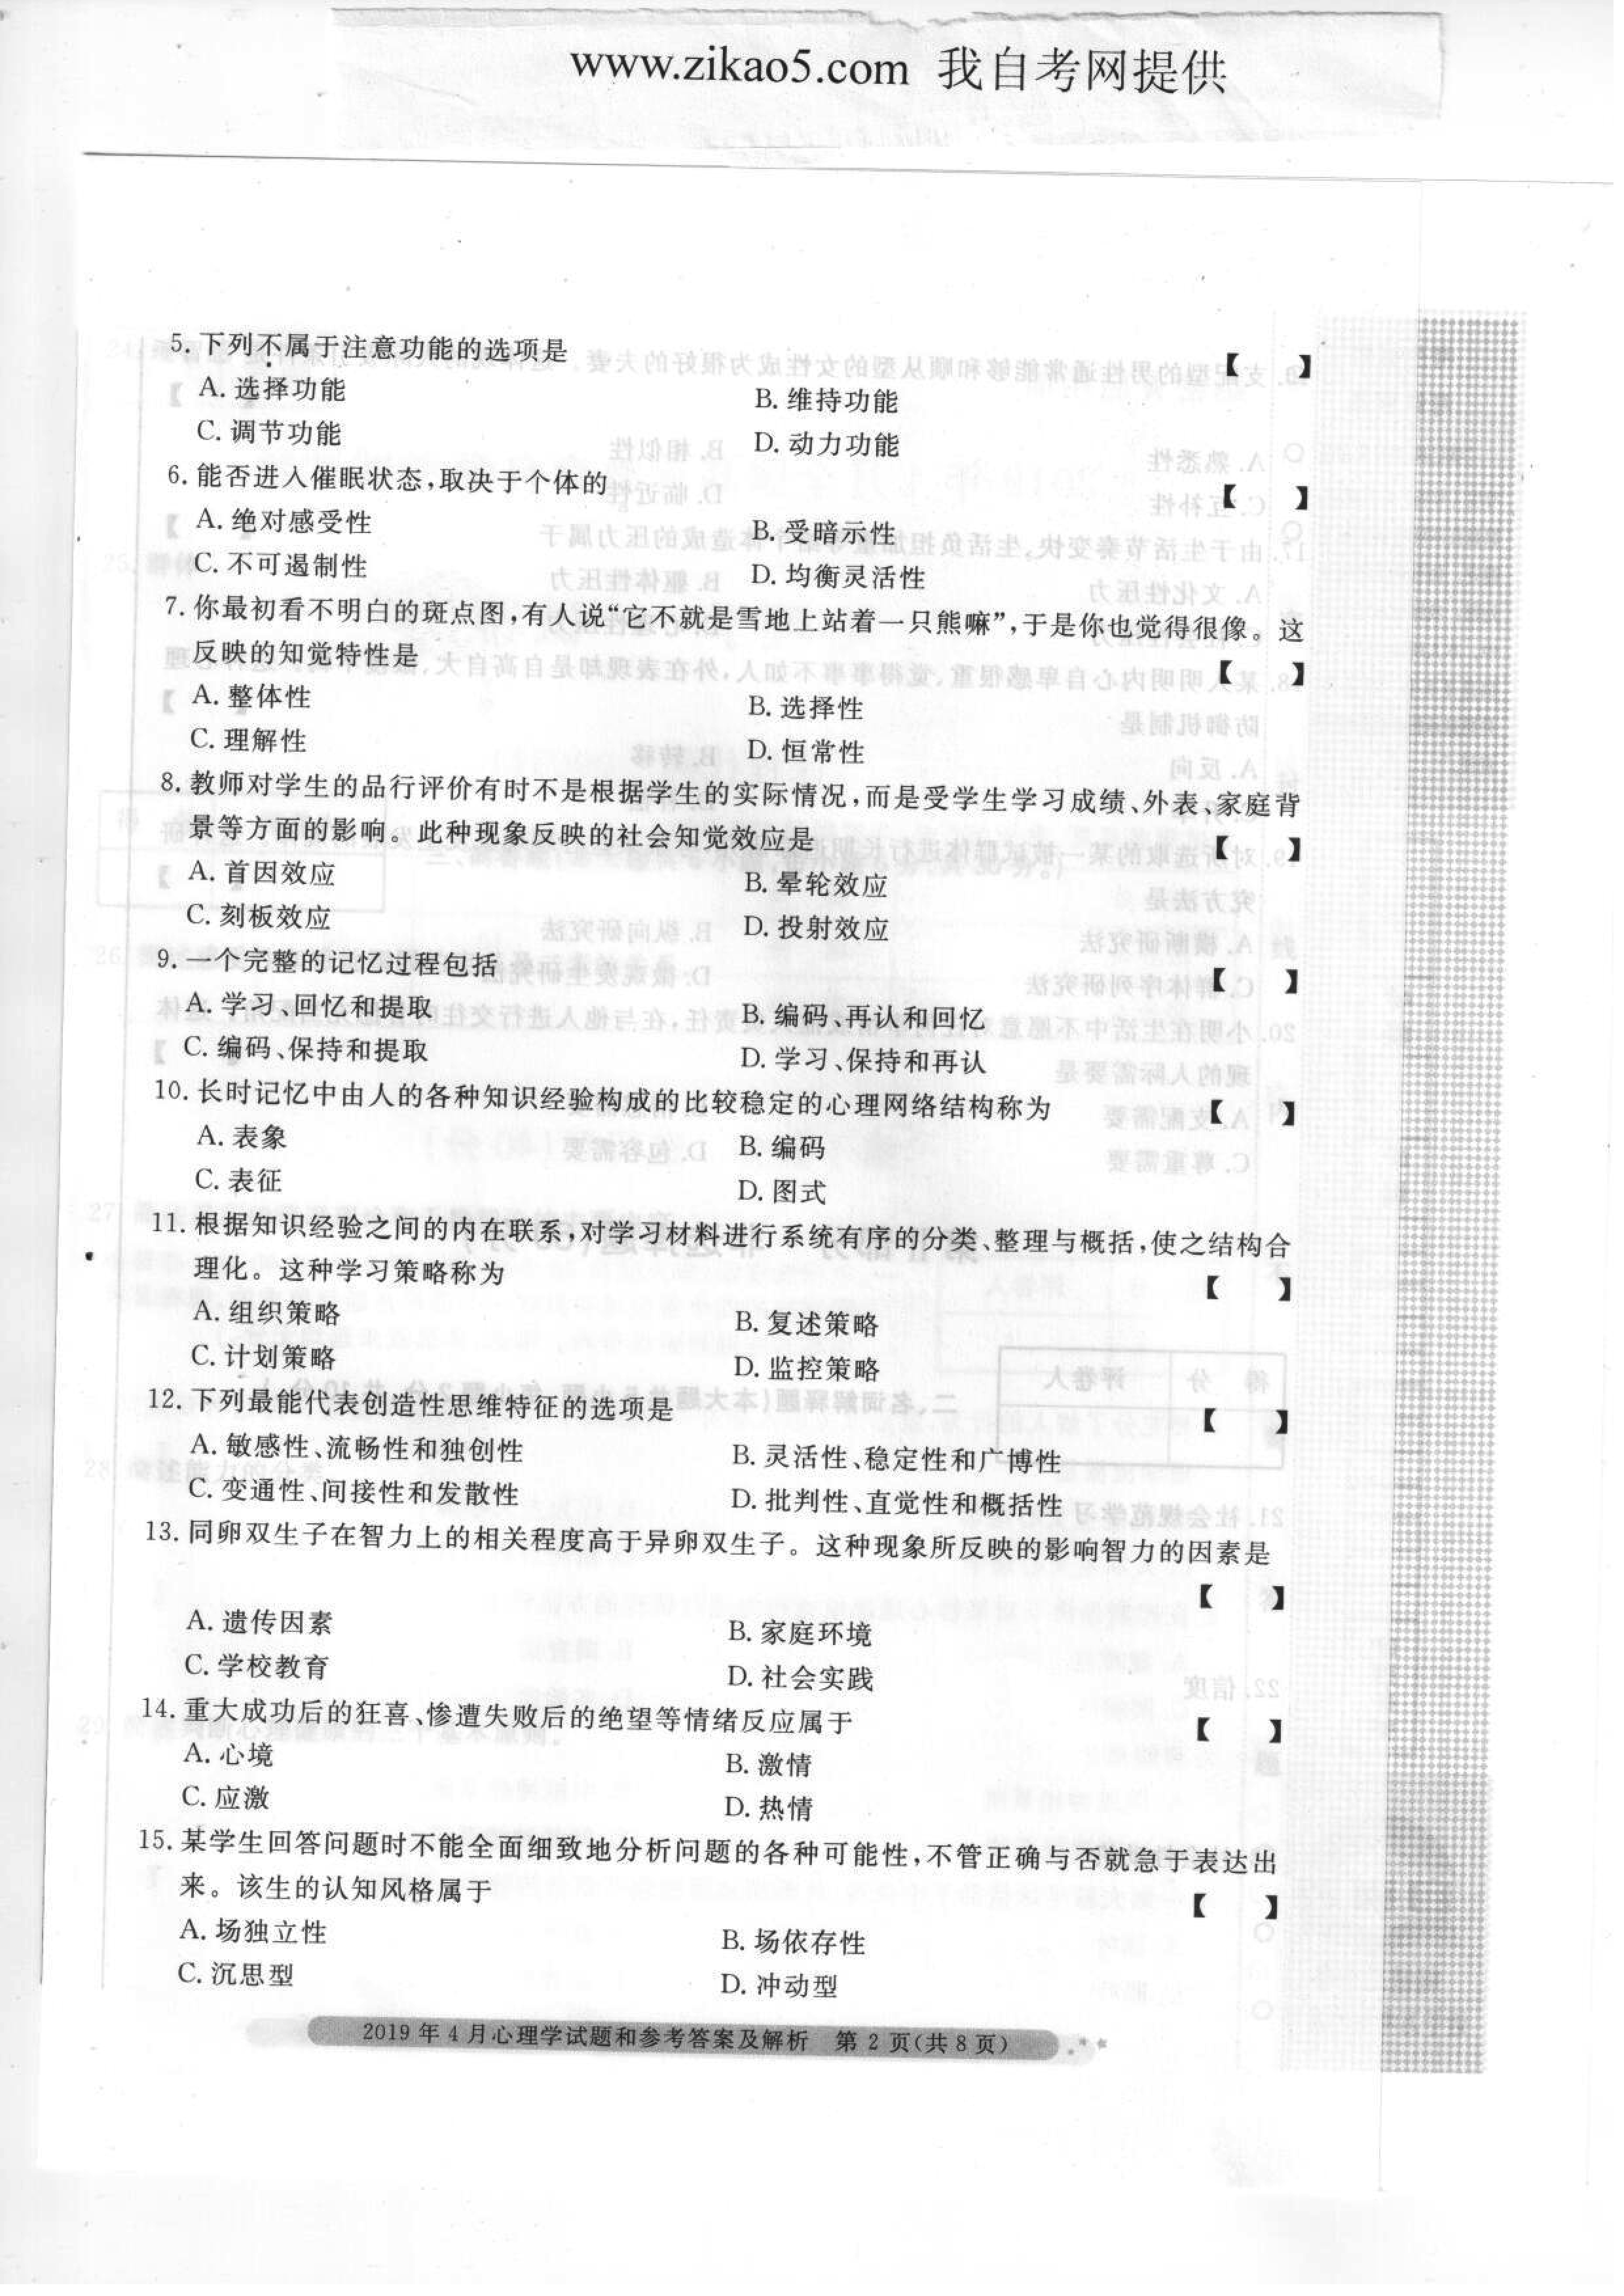 2019年04月贵州省自学考试00031心理学真题及答案